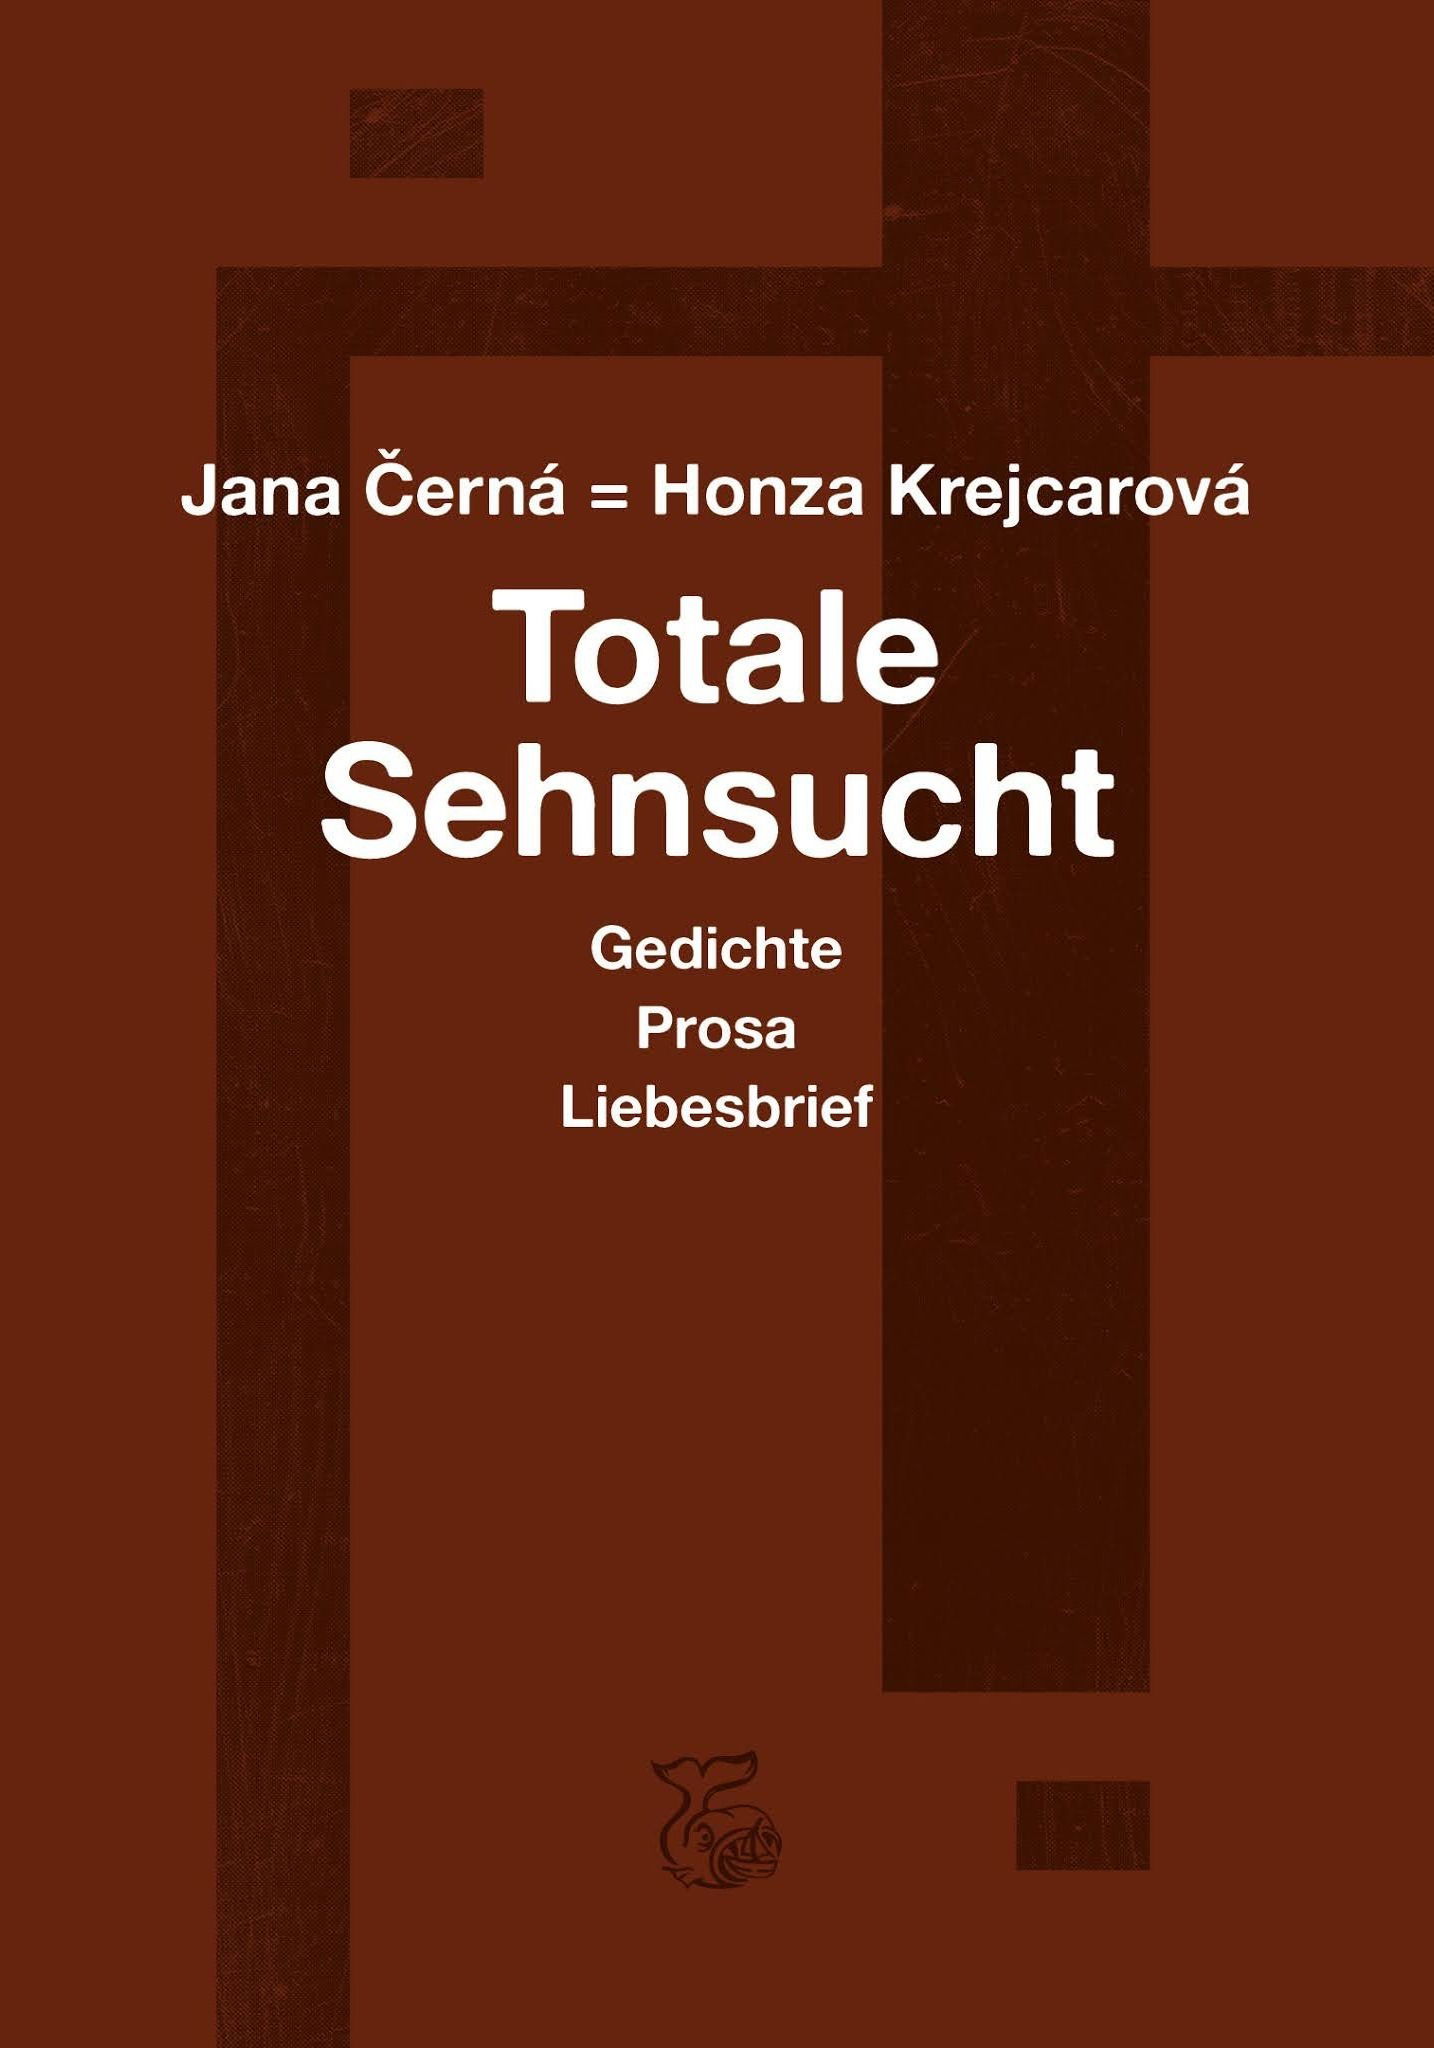 Jana Černá = Honza Krejcarová: "Totale Sehnsucht"